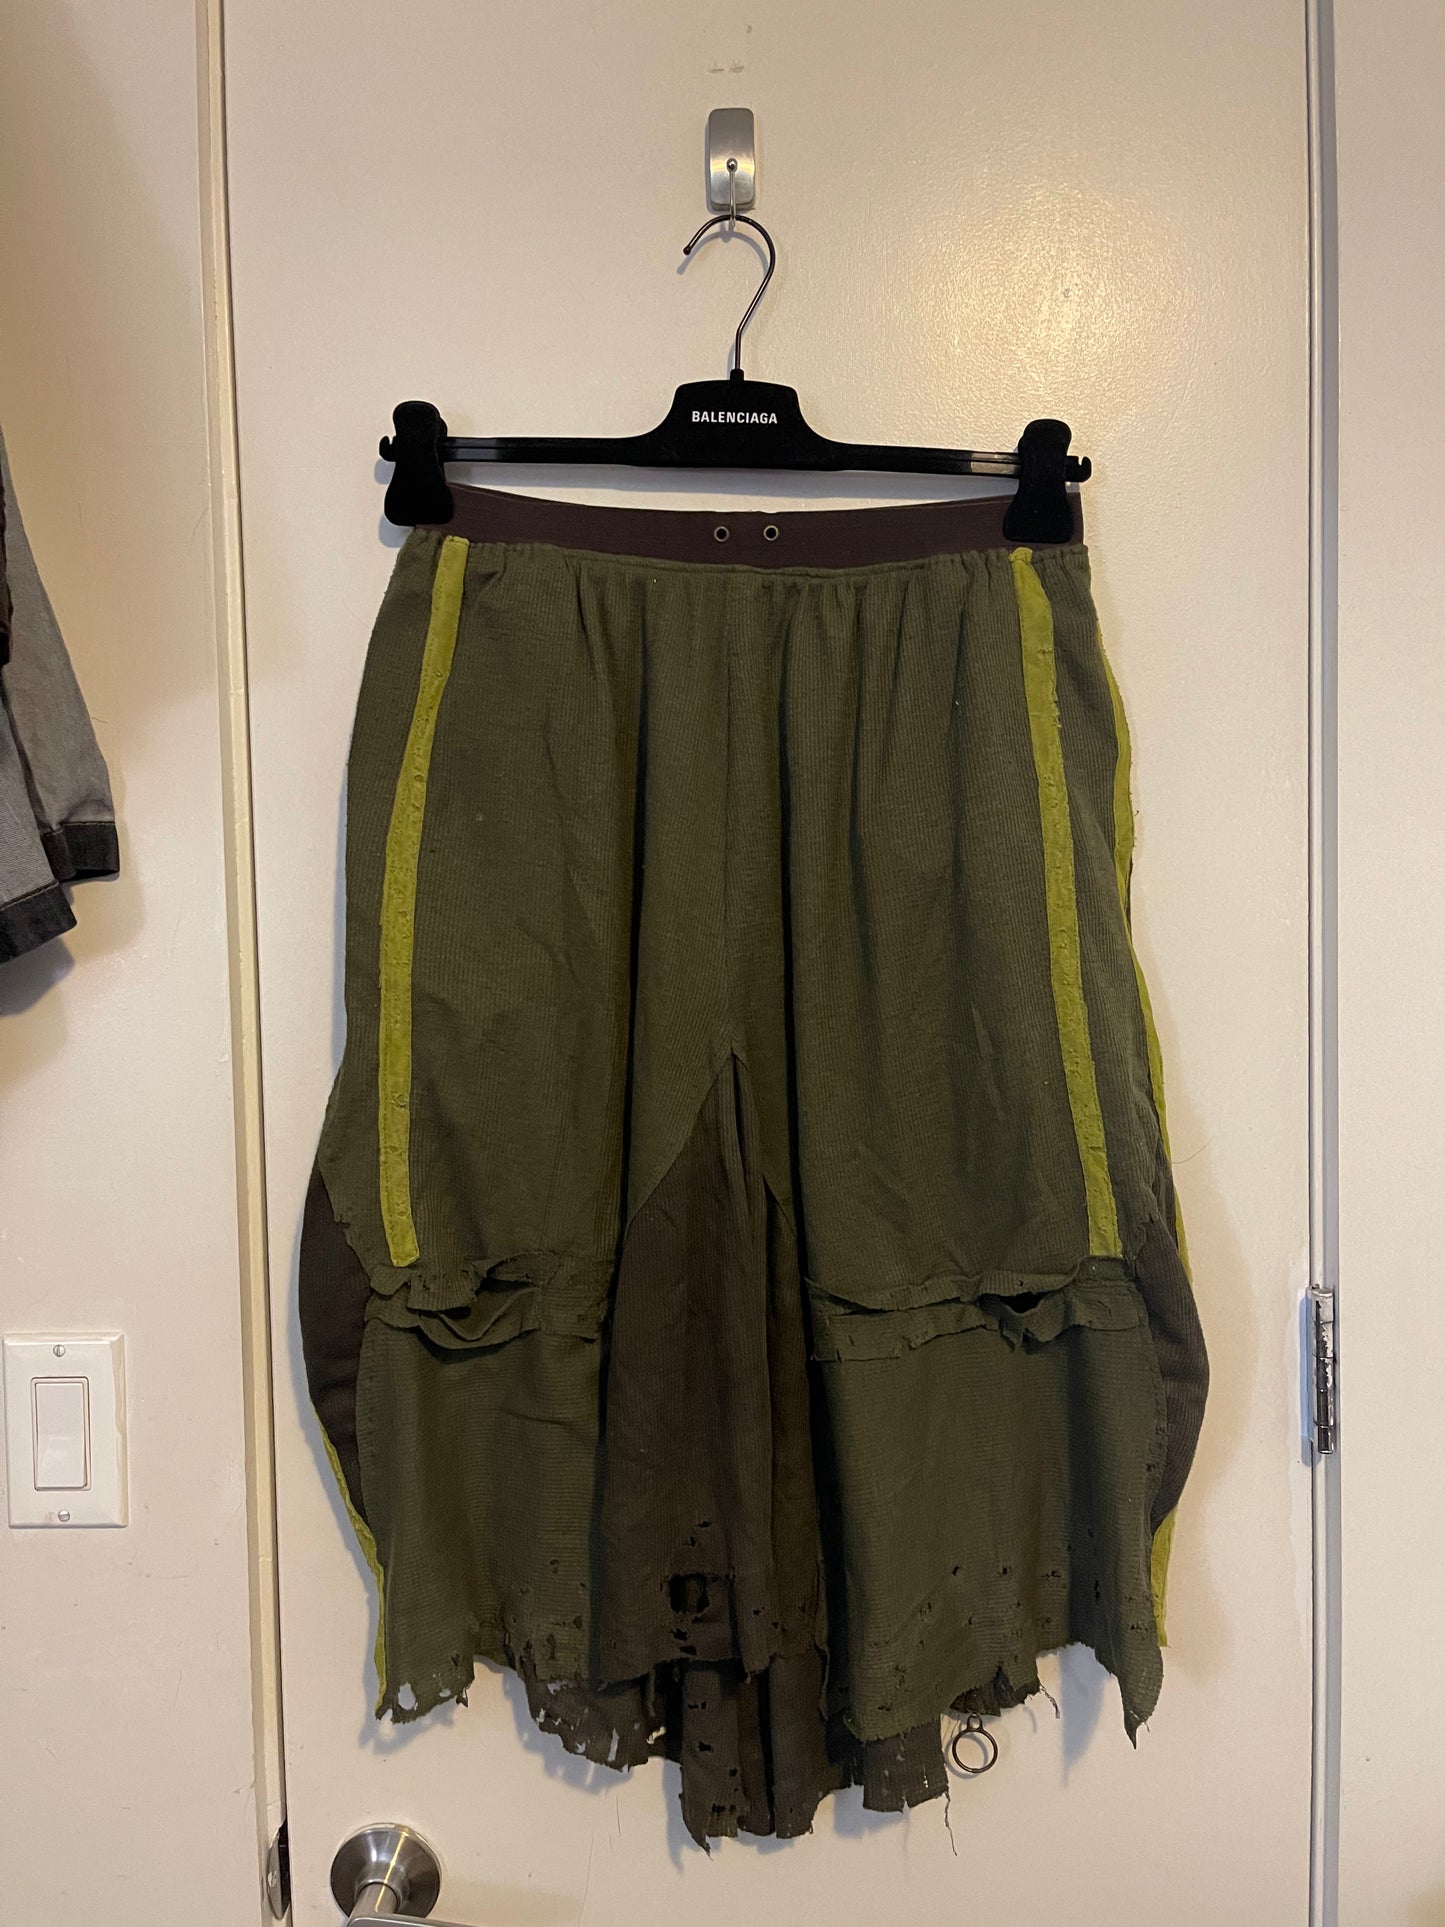 Kunai NYC adidas bootleg skirt